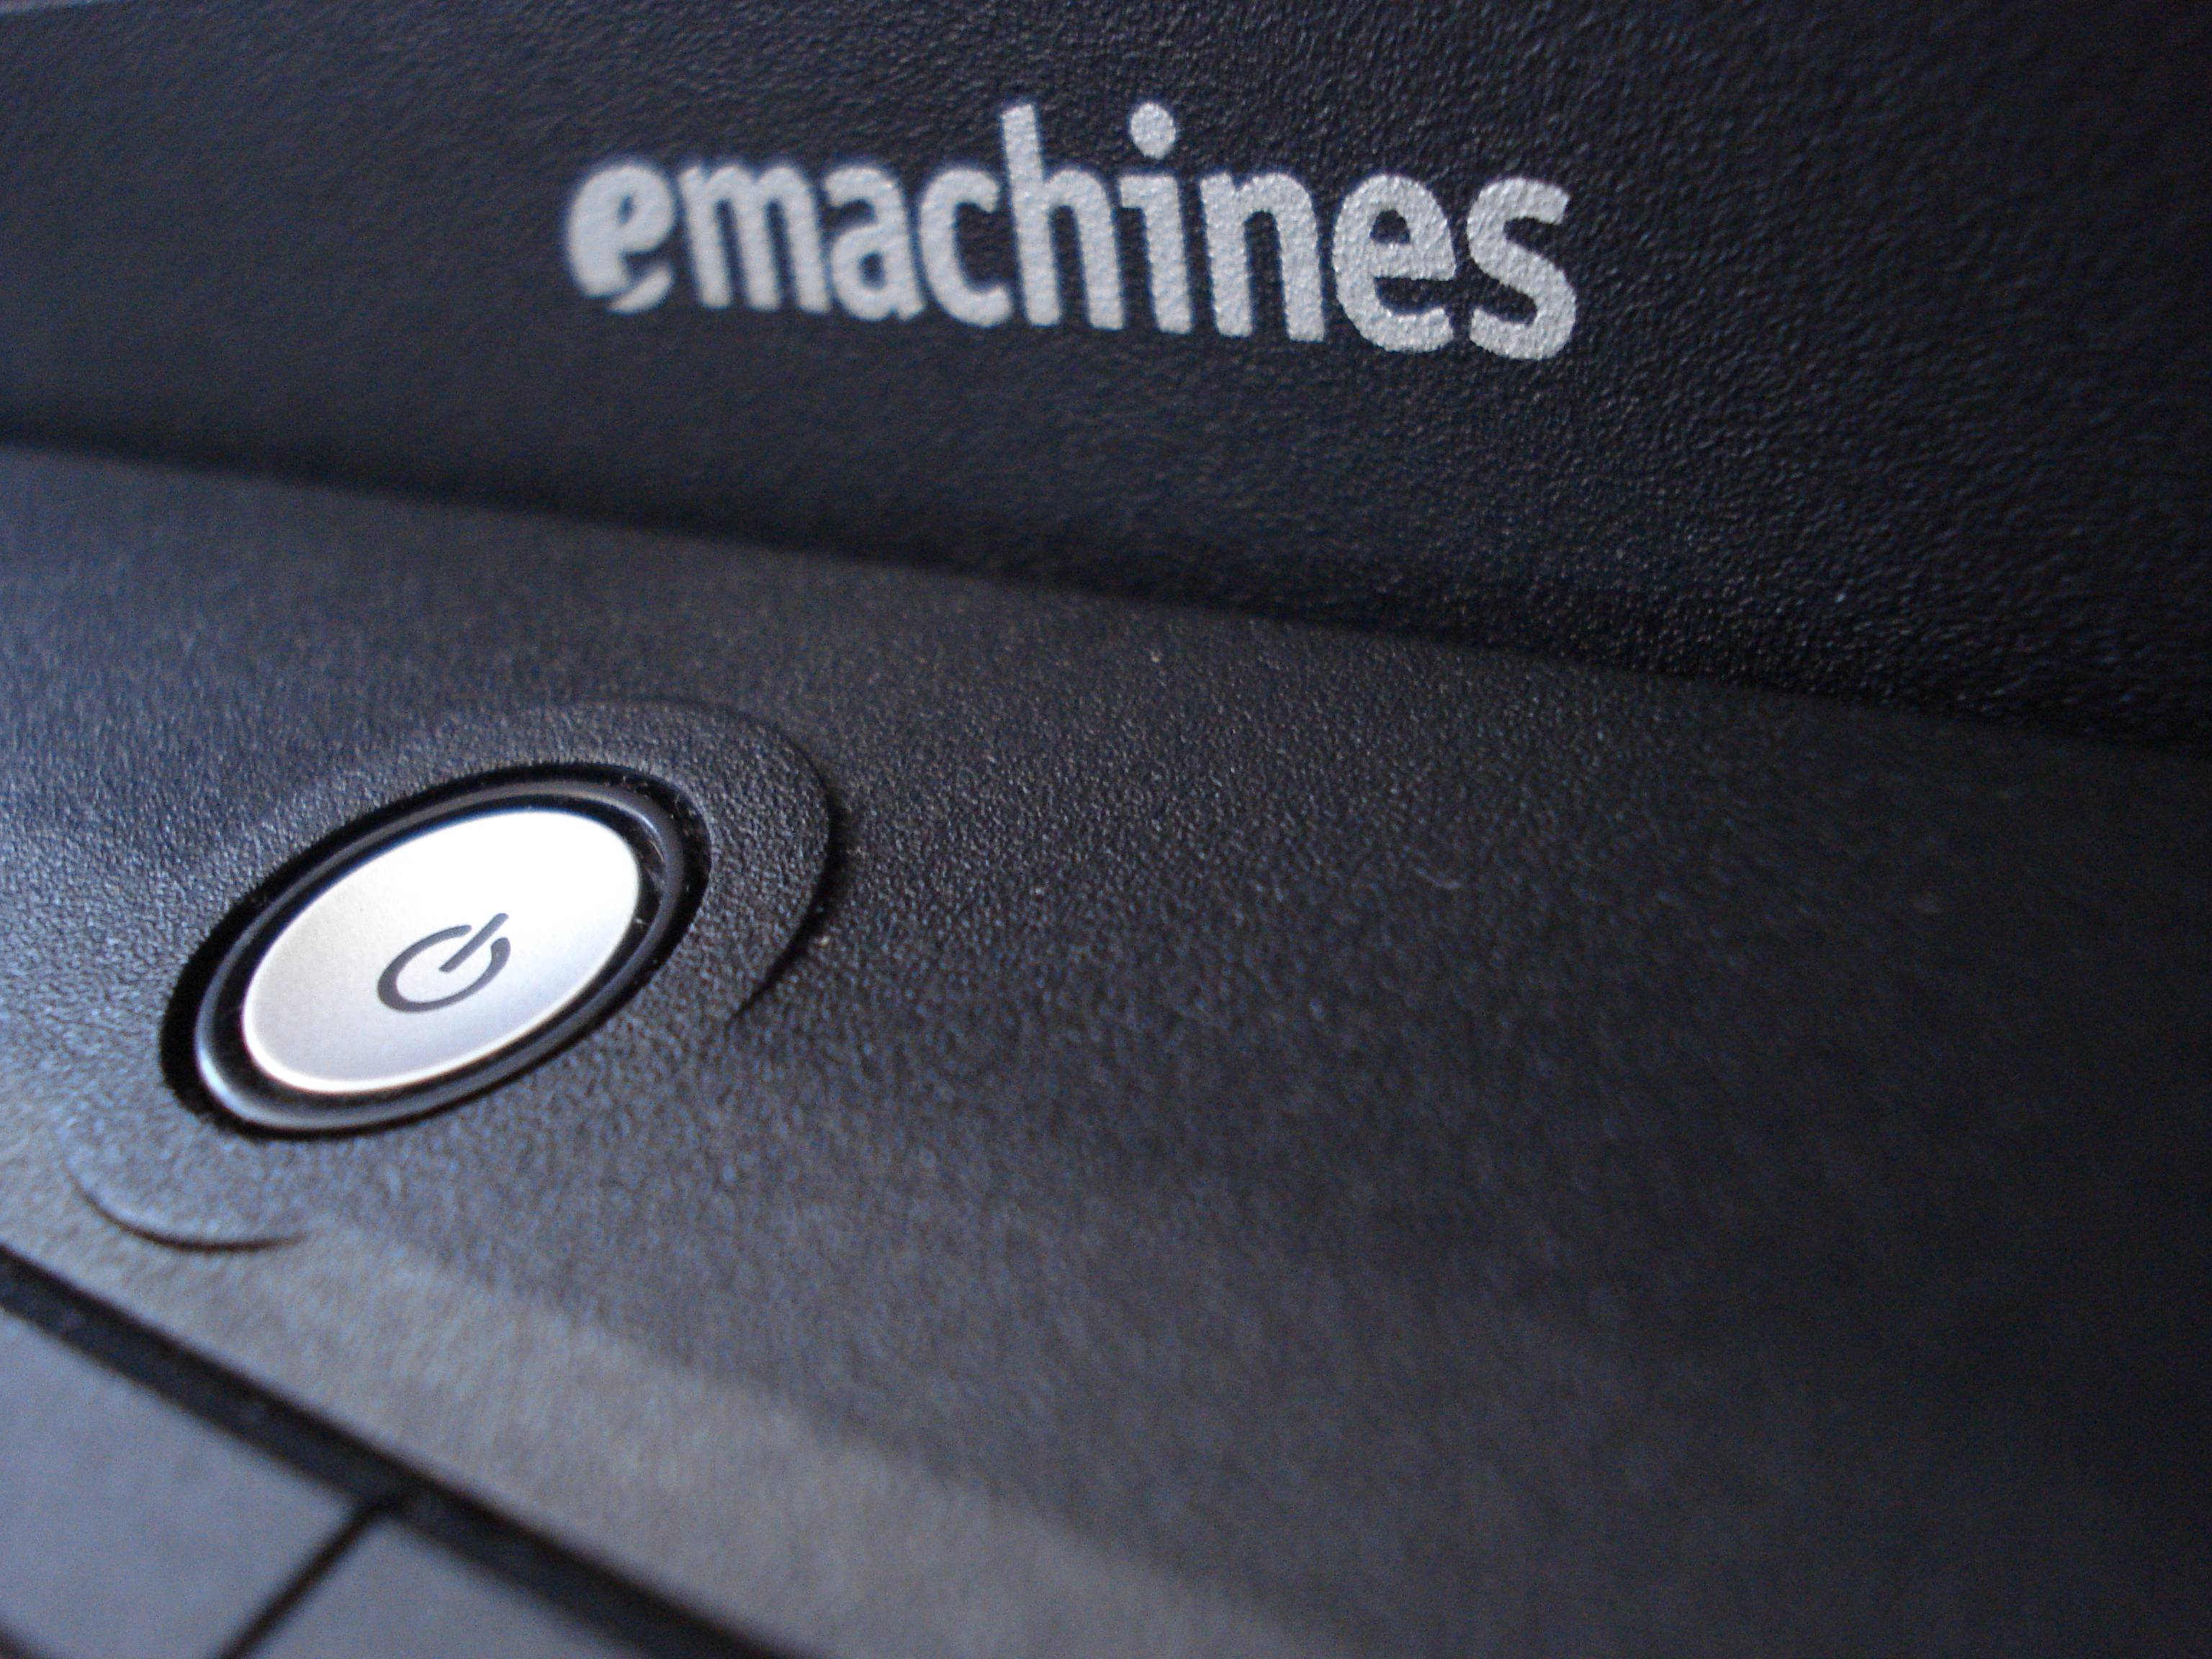 Desktop background, emachines logo + power on button